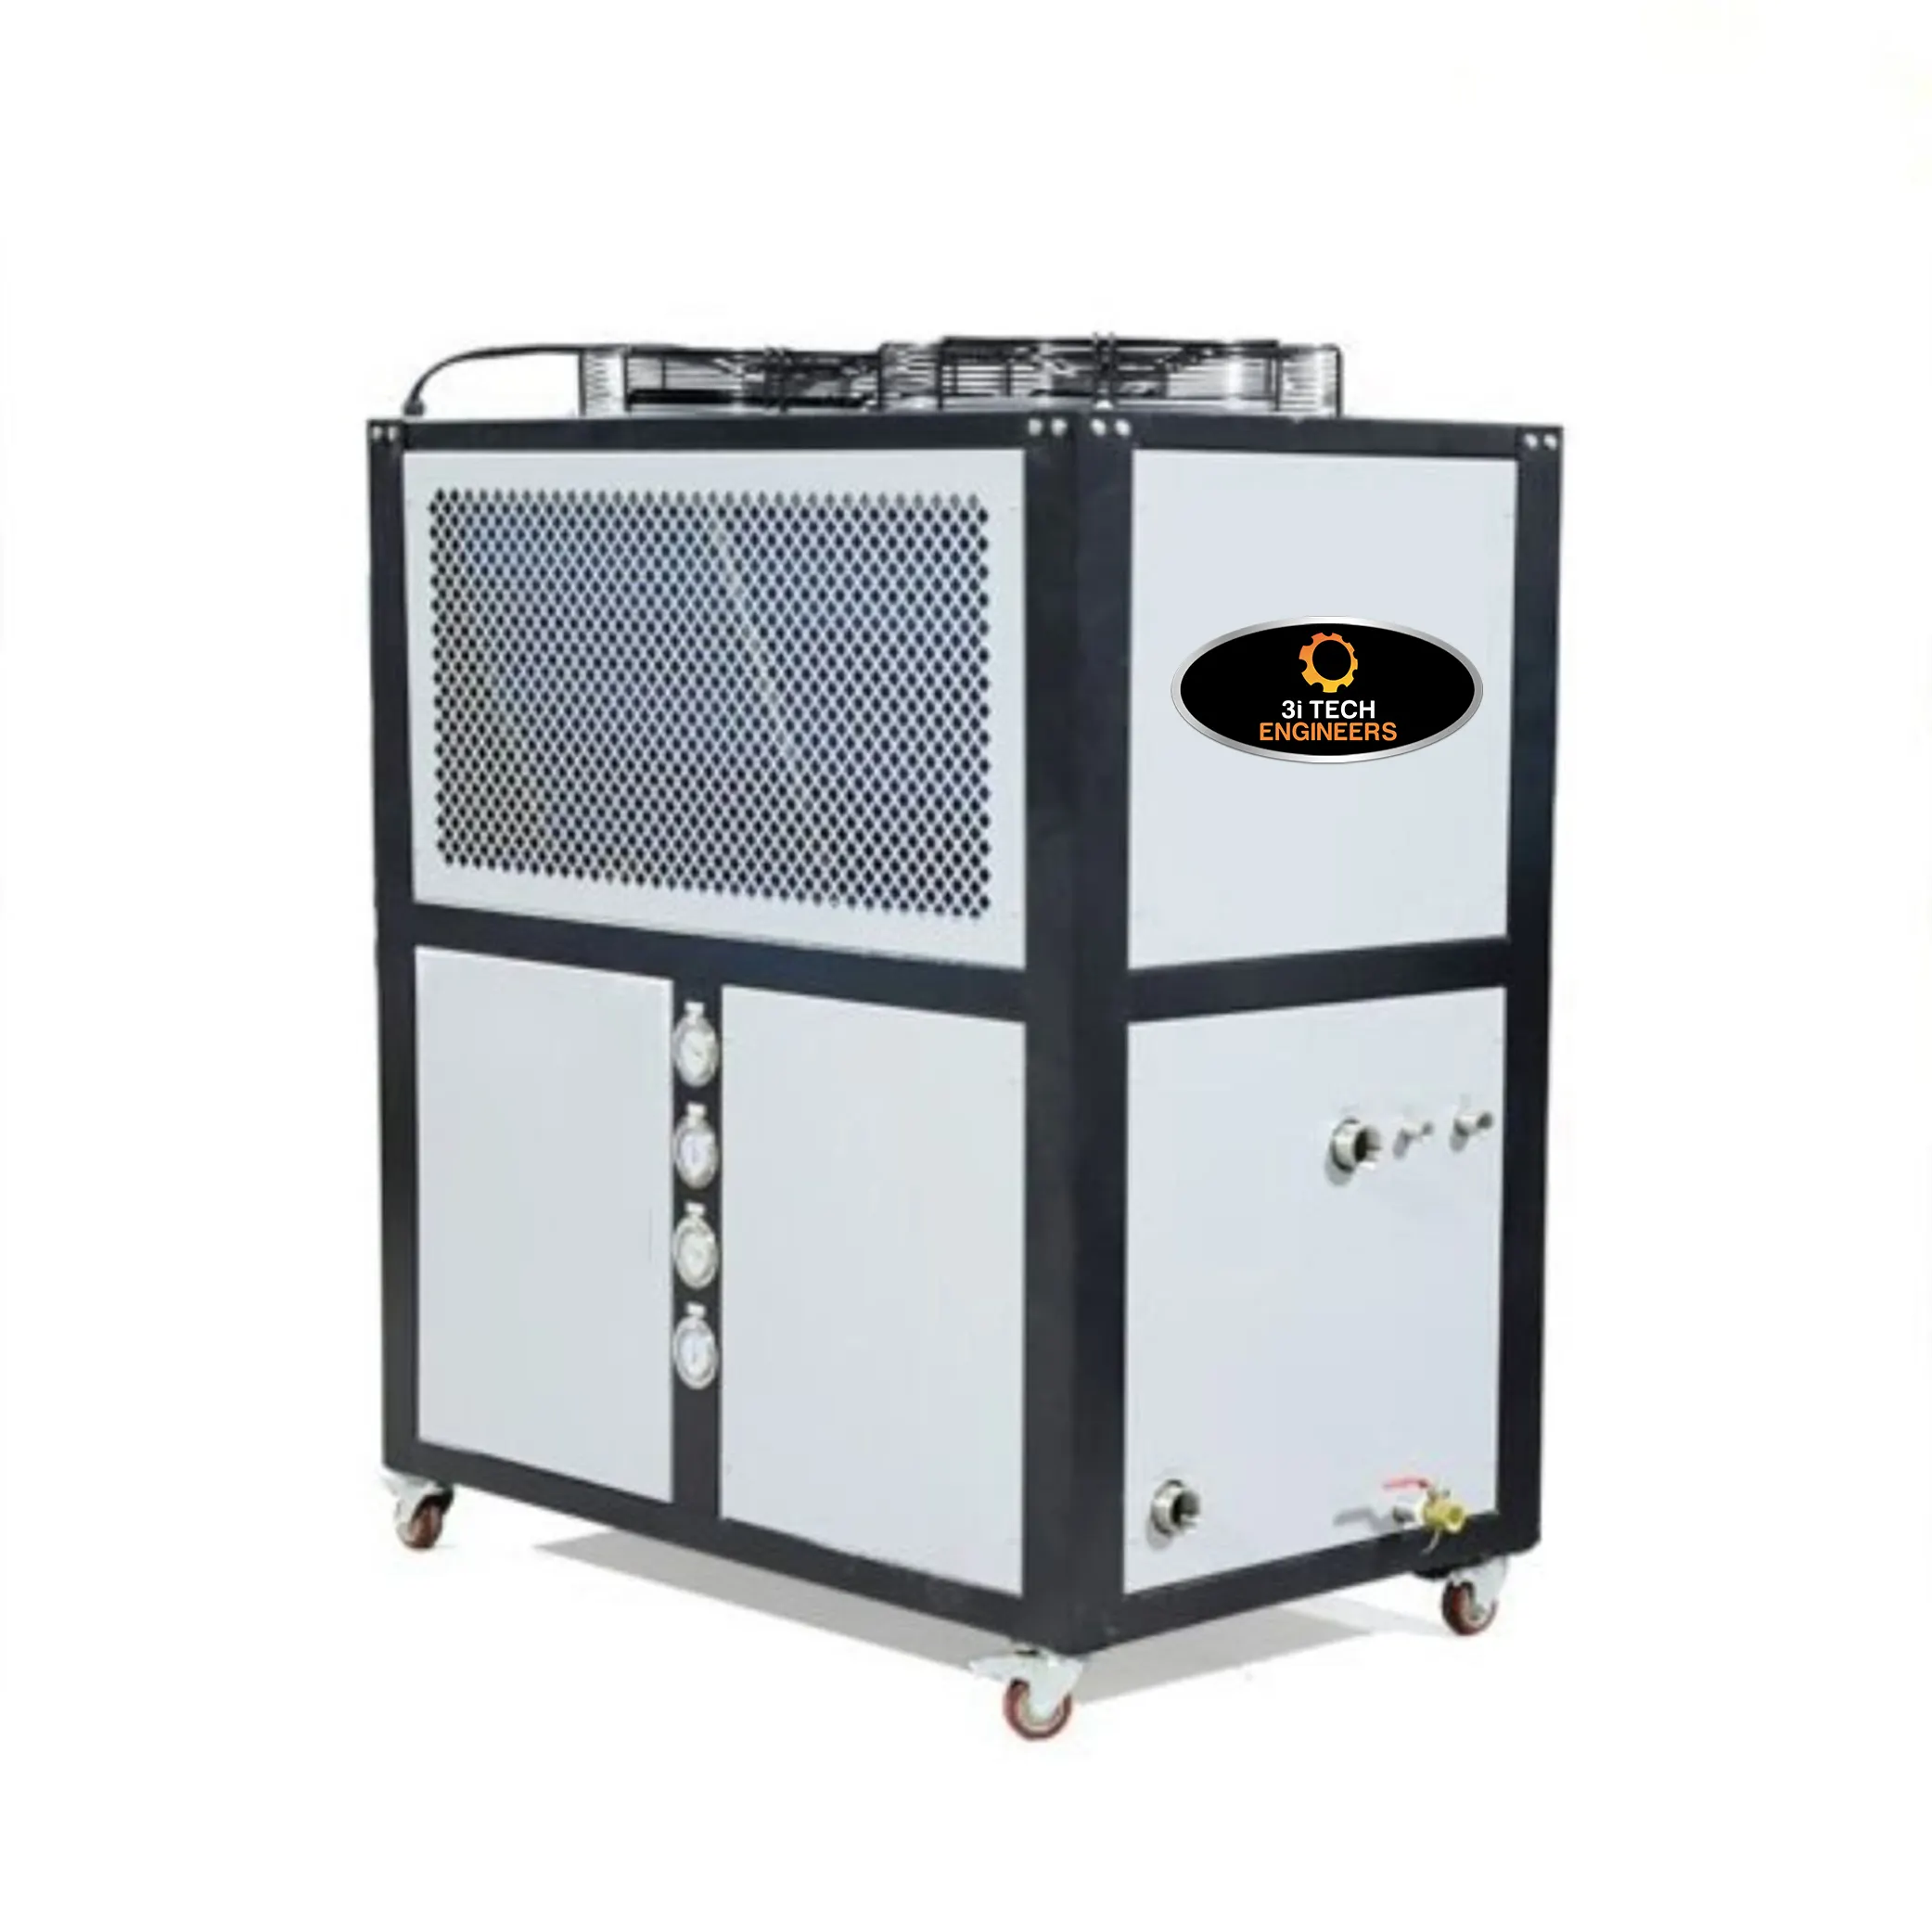 Raffreddati ad aria 3 fase 60 Tr refrigeratori compatti industriali completamente automatici raffreddati ad acqua realizzati in india